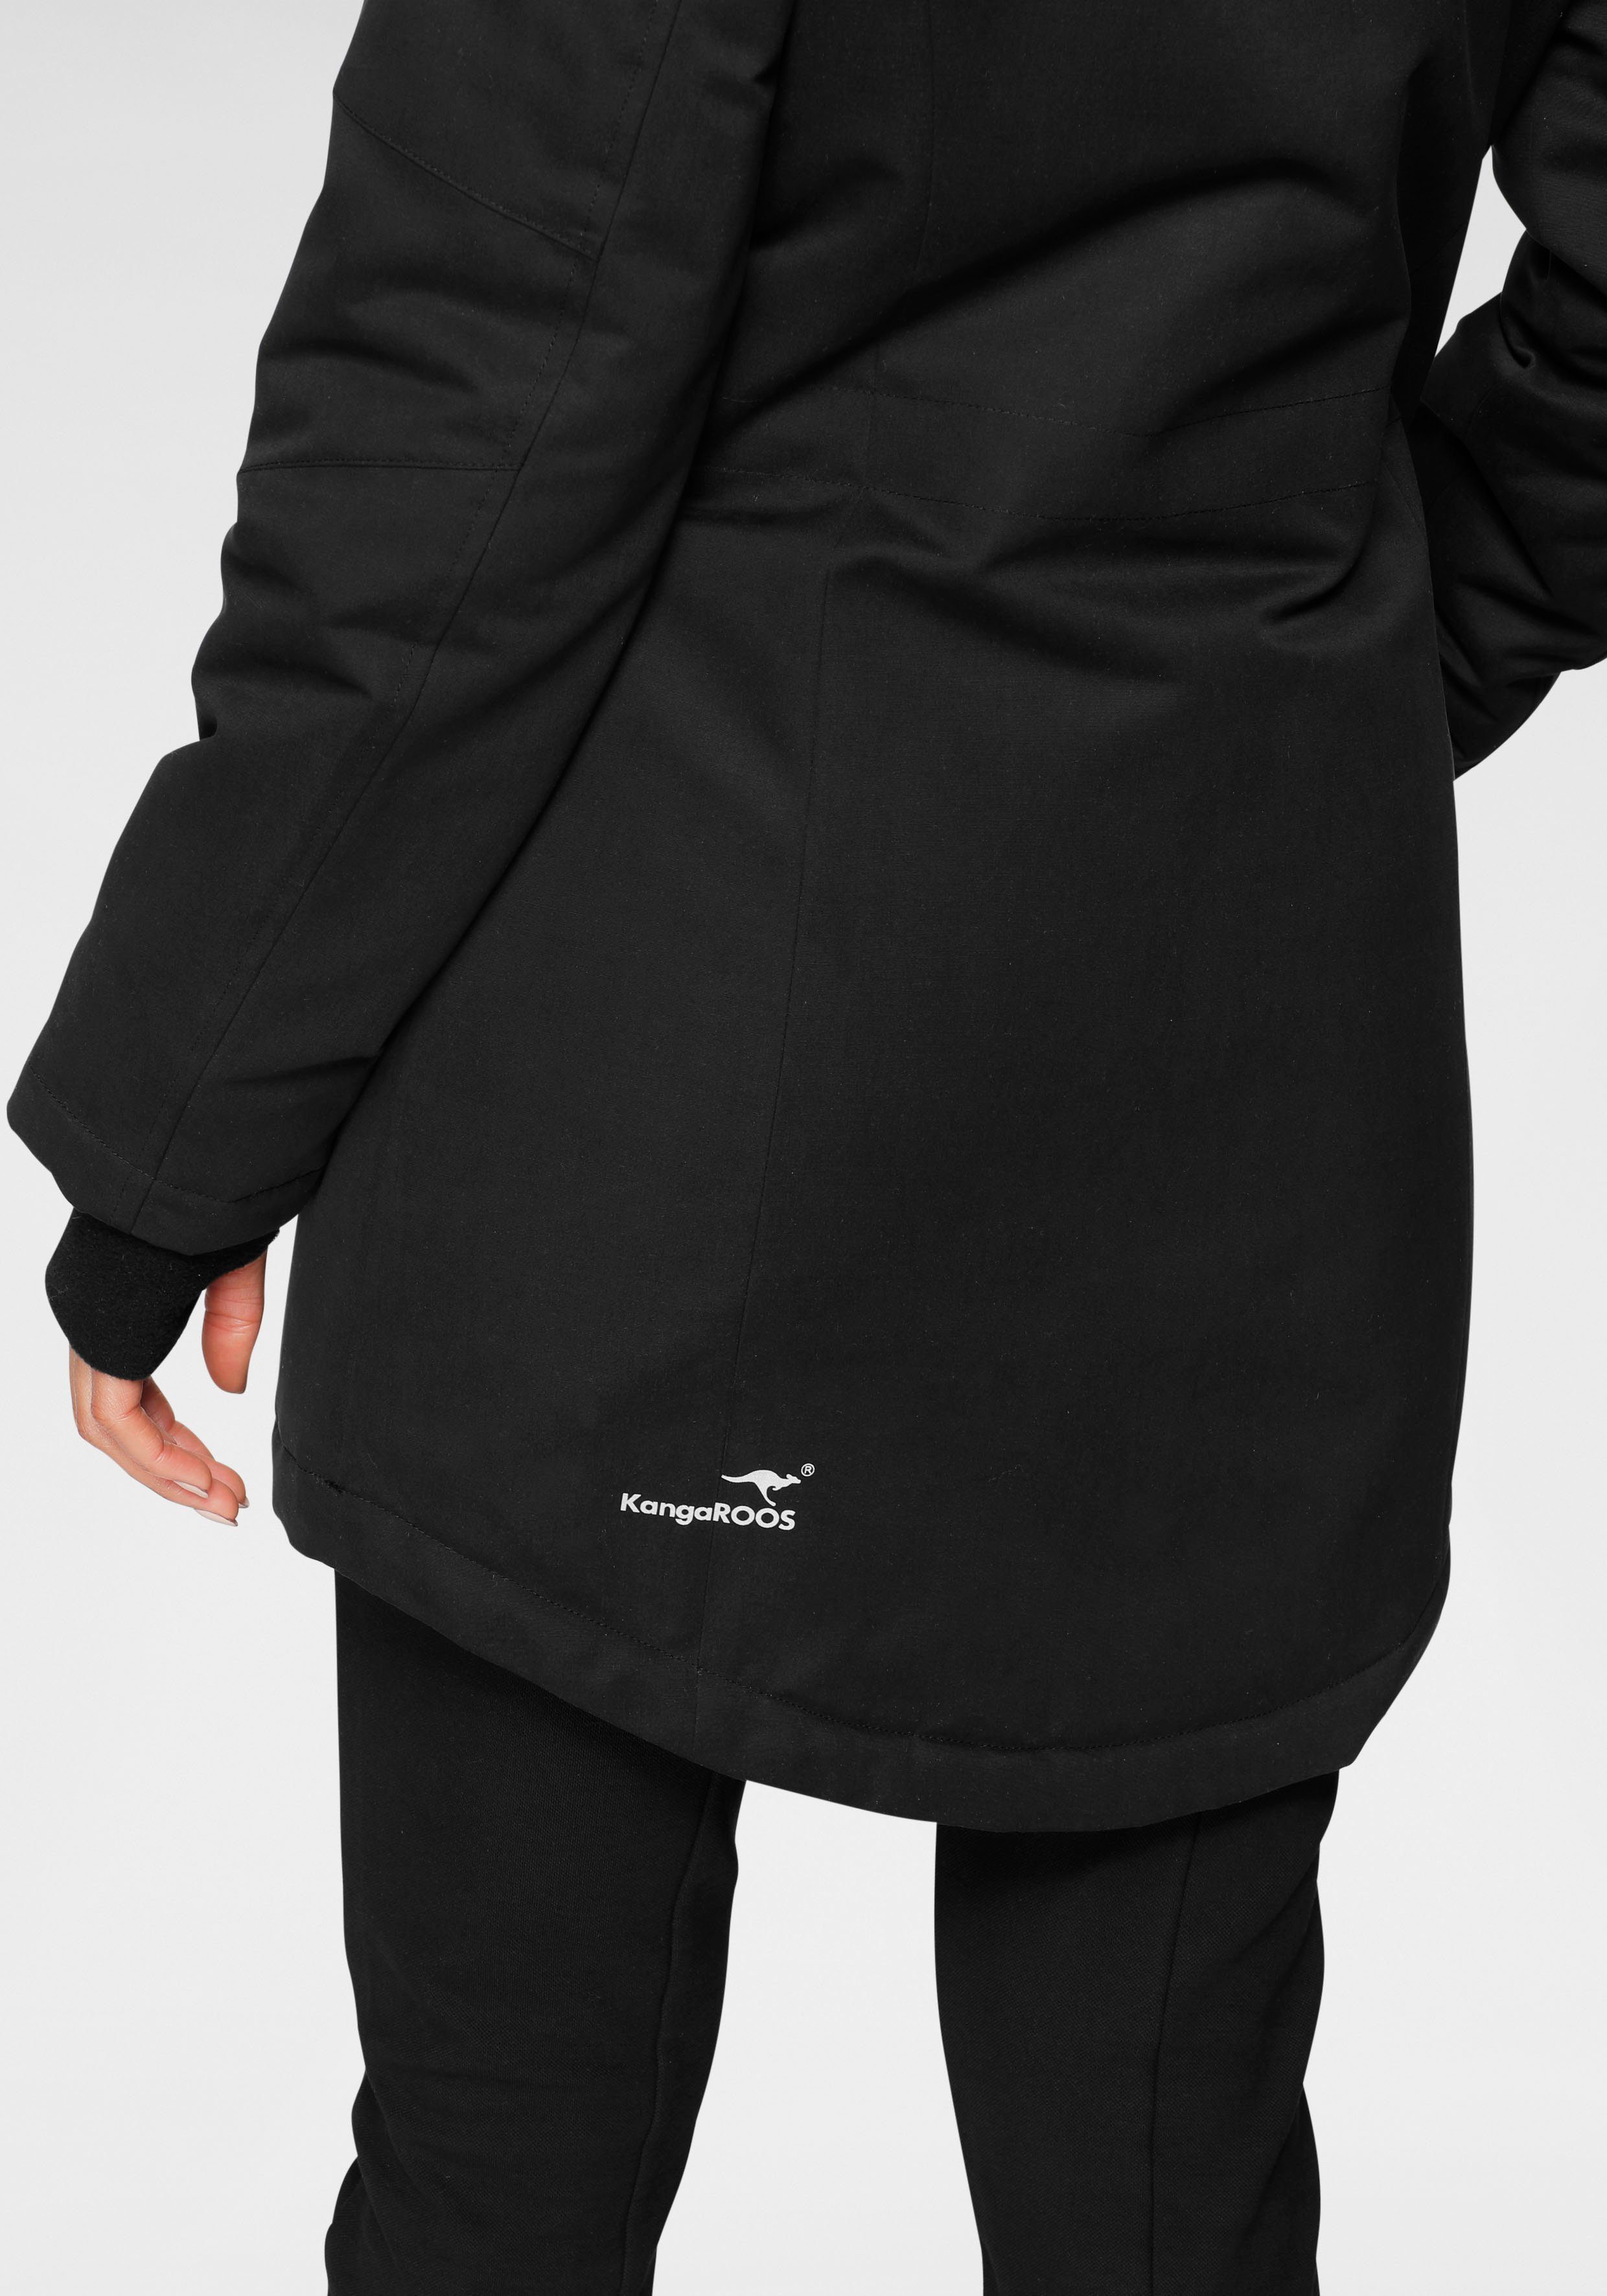 Langjacke KangaROOS aus und schwarz nachhaltigem mit 2-Wege-Reißverschluss Taschen (Langjacke Material) vielen